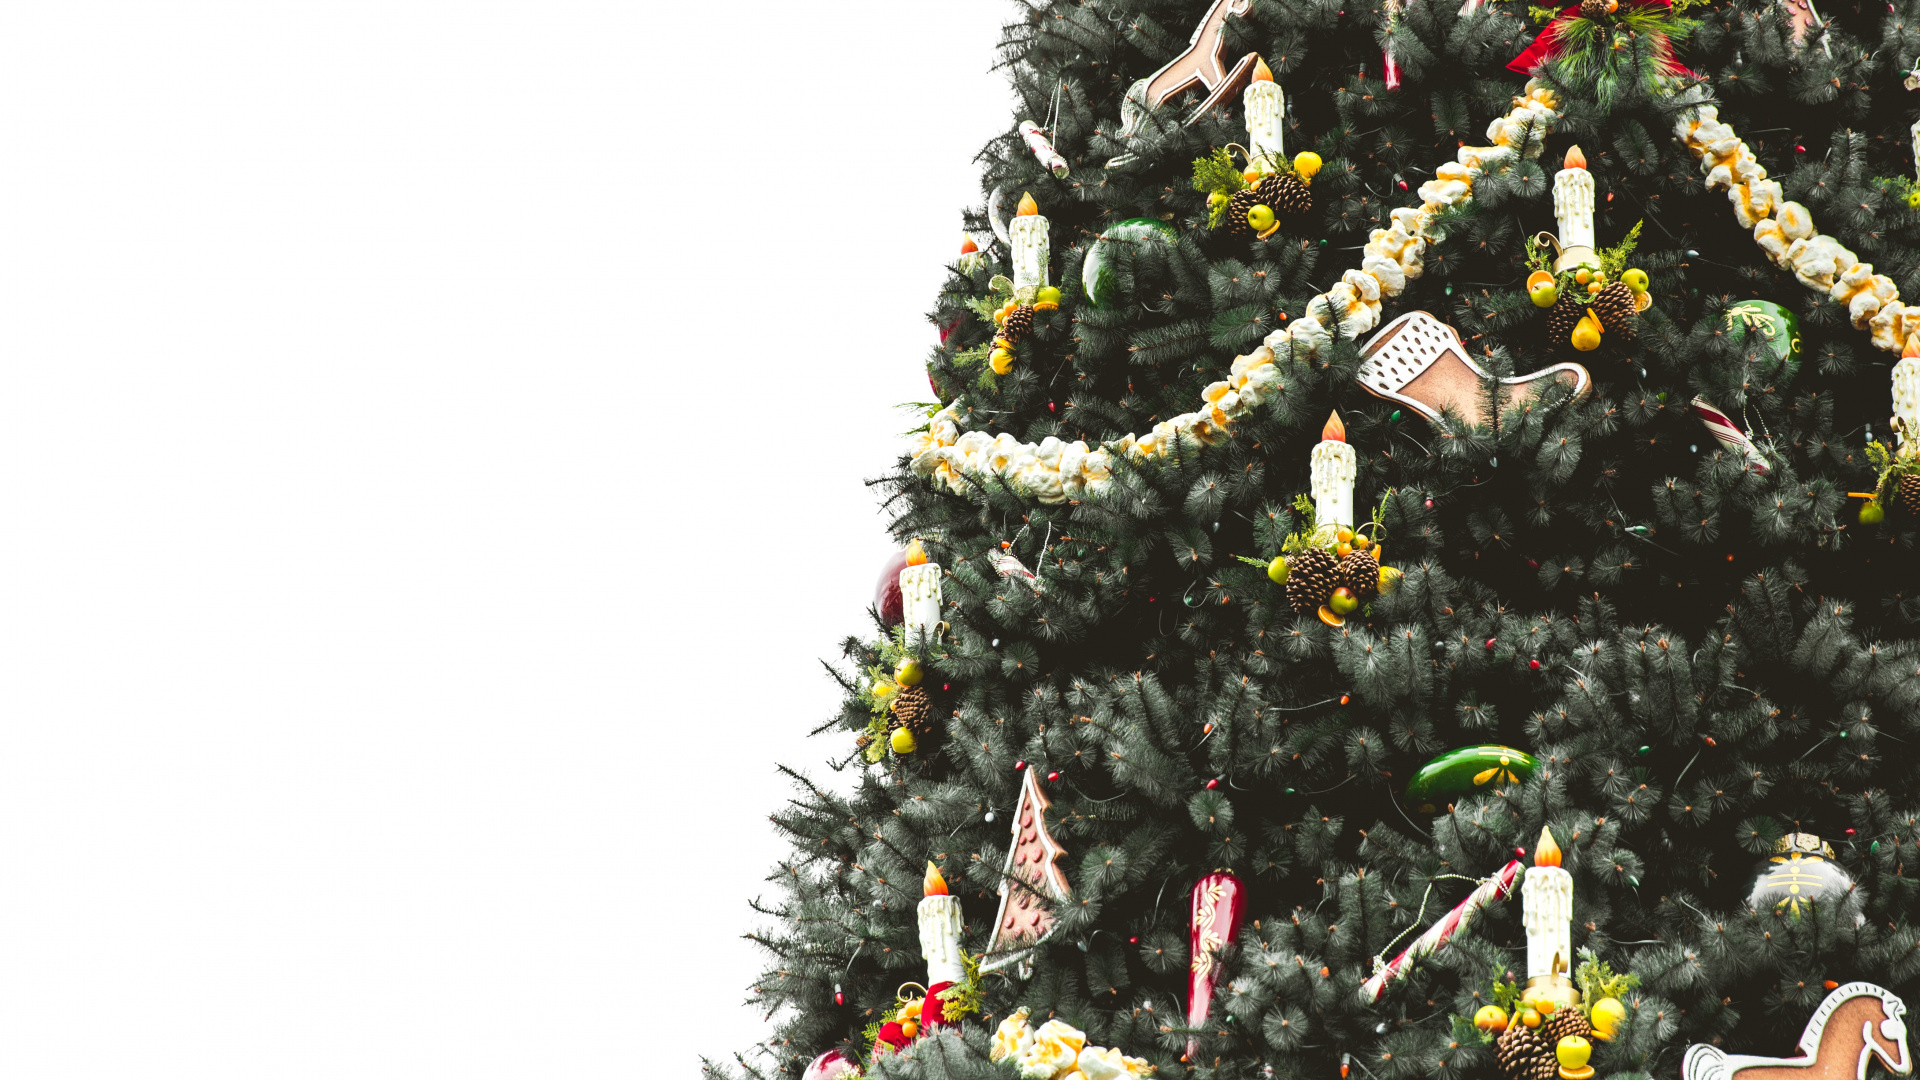 El Día De Navidad, la Navidad y la Temporada de Vacaciones, Planta Leñosa, Evergreen, Decoración de la Navidad. Wallpaper in 1920x1080 Resolution